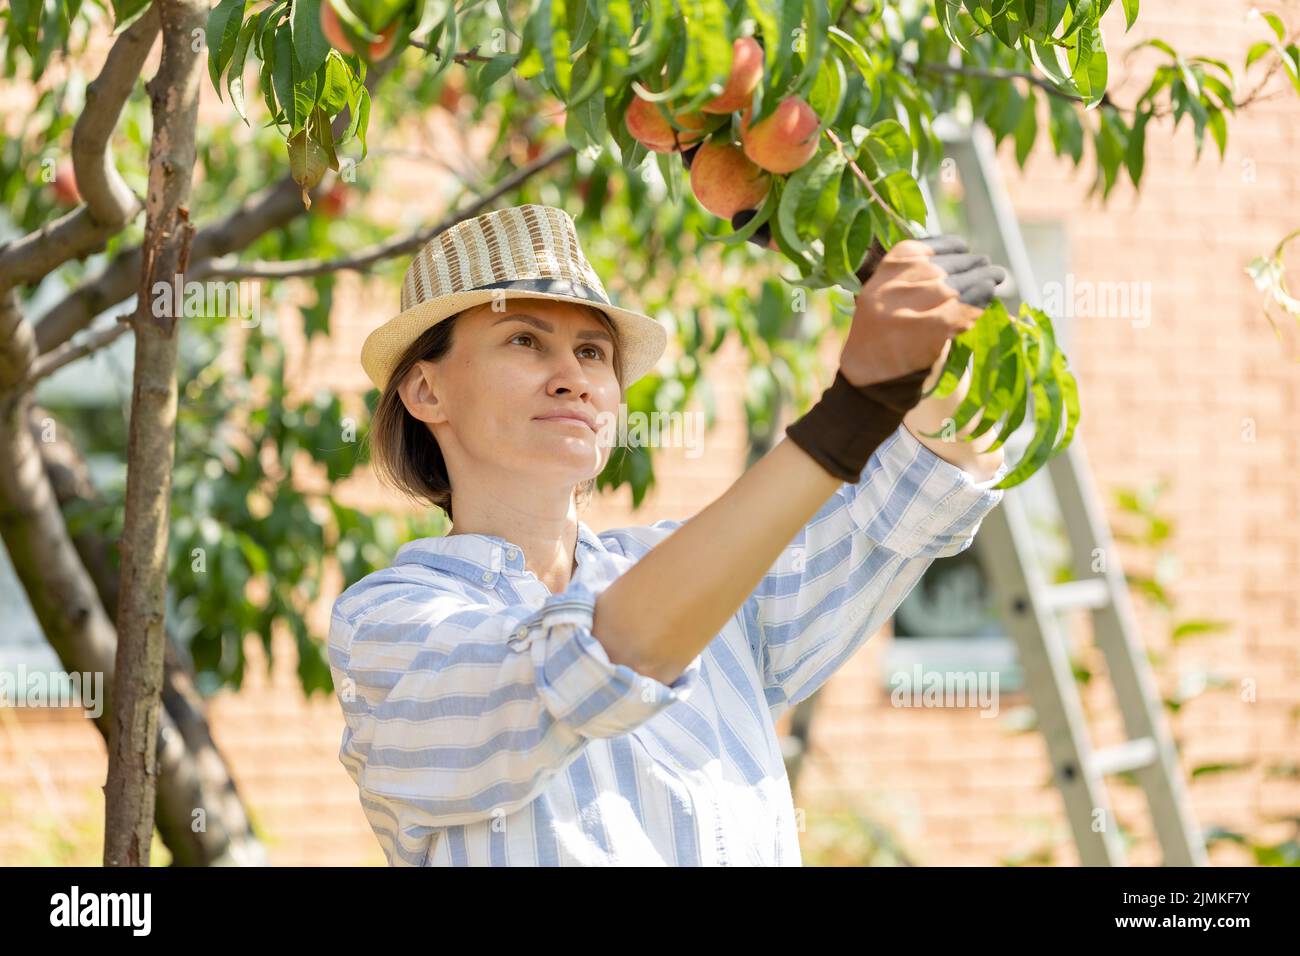 agriculteur femme horticulteur cueillant des pêches de l'arbre dans le jardin Banque D'Images